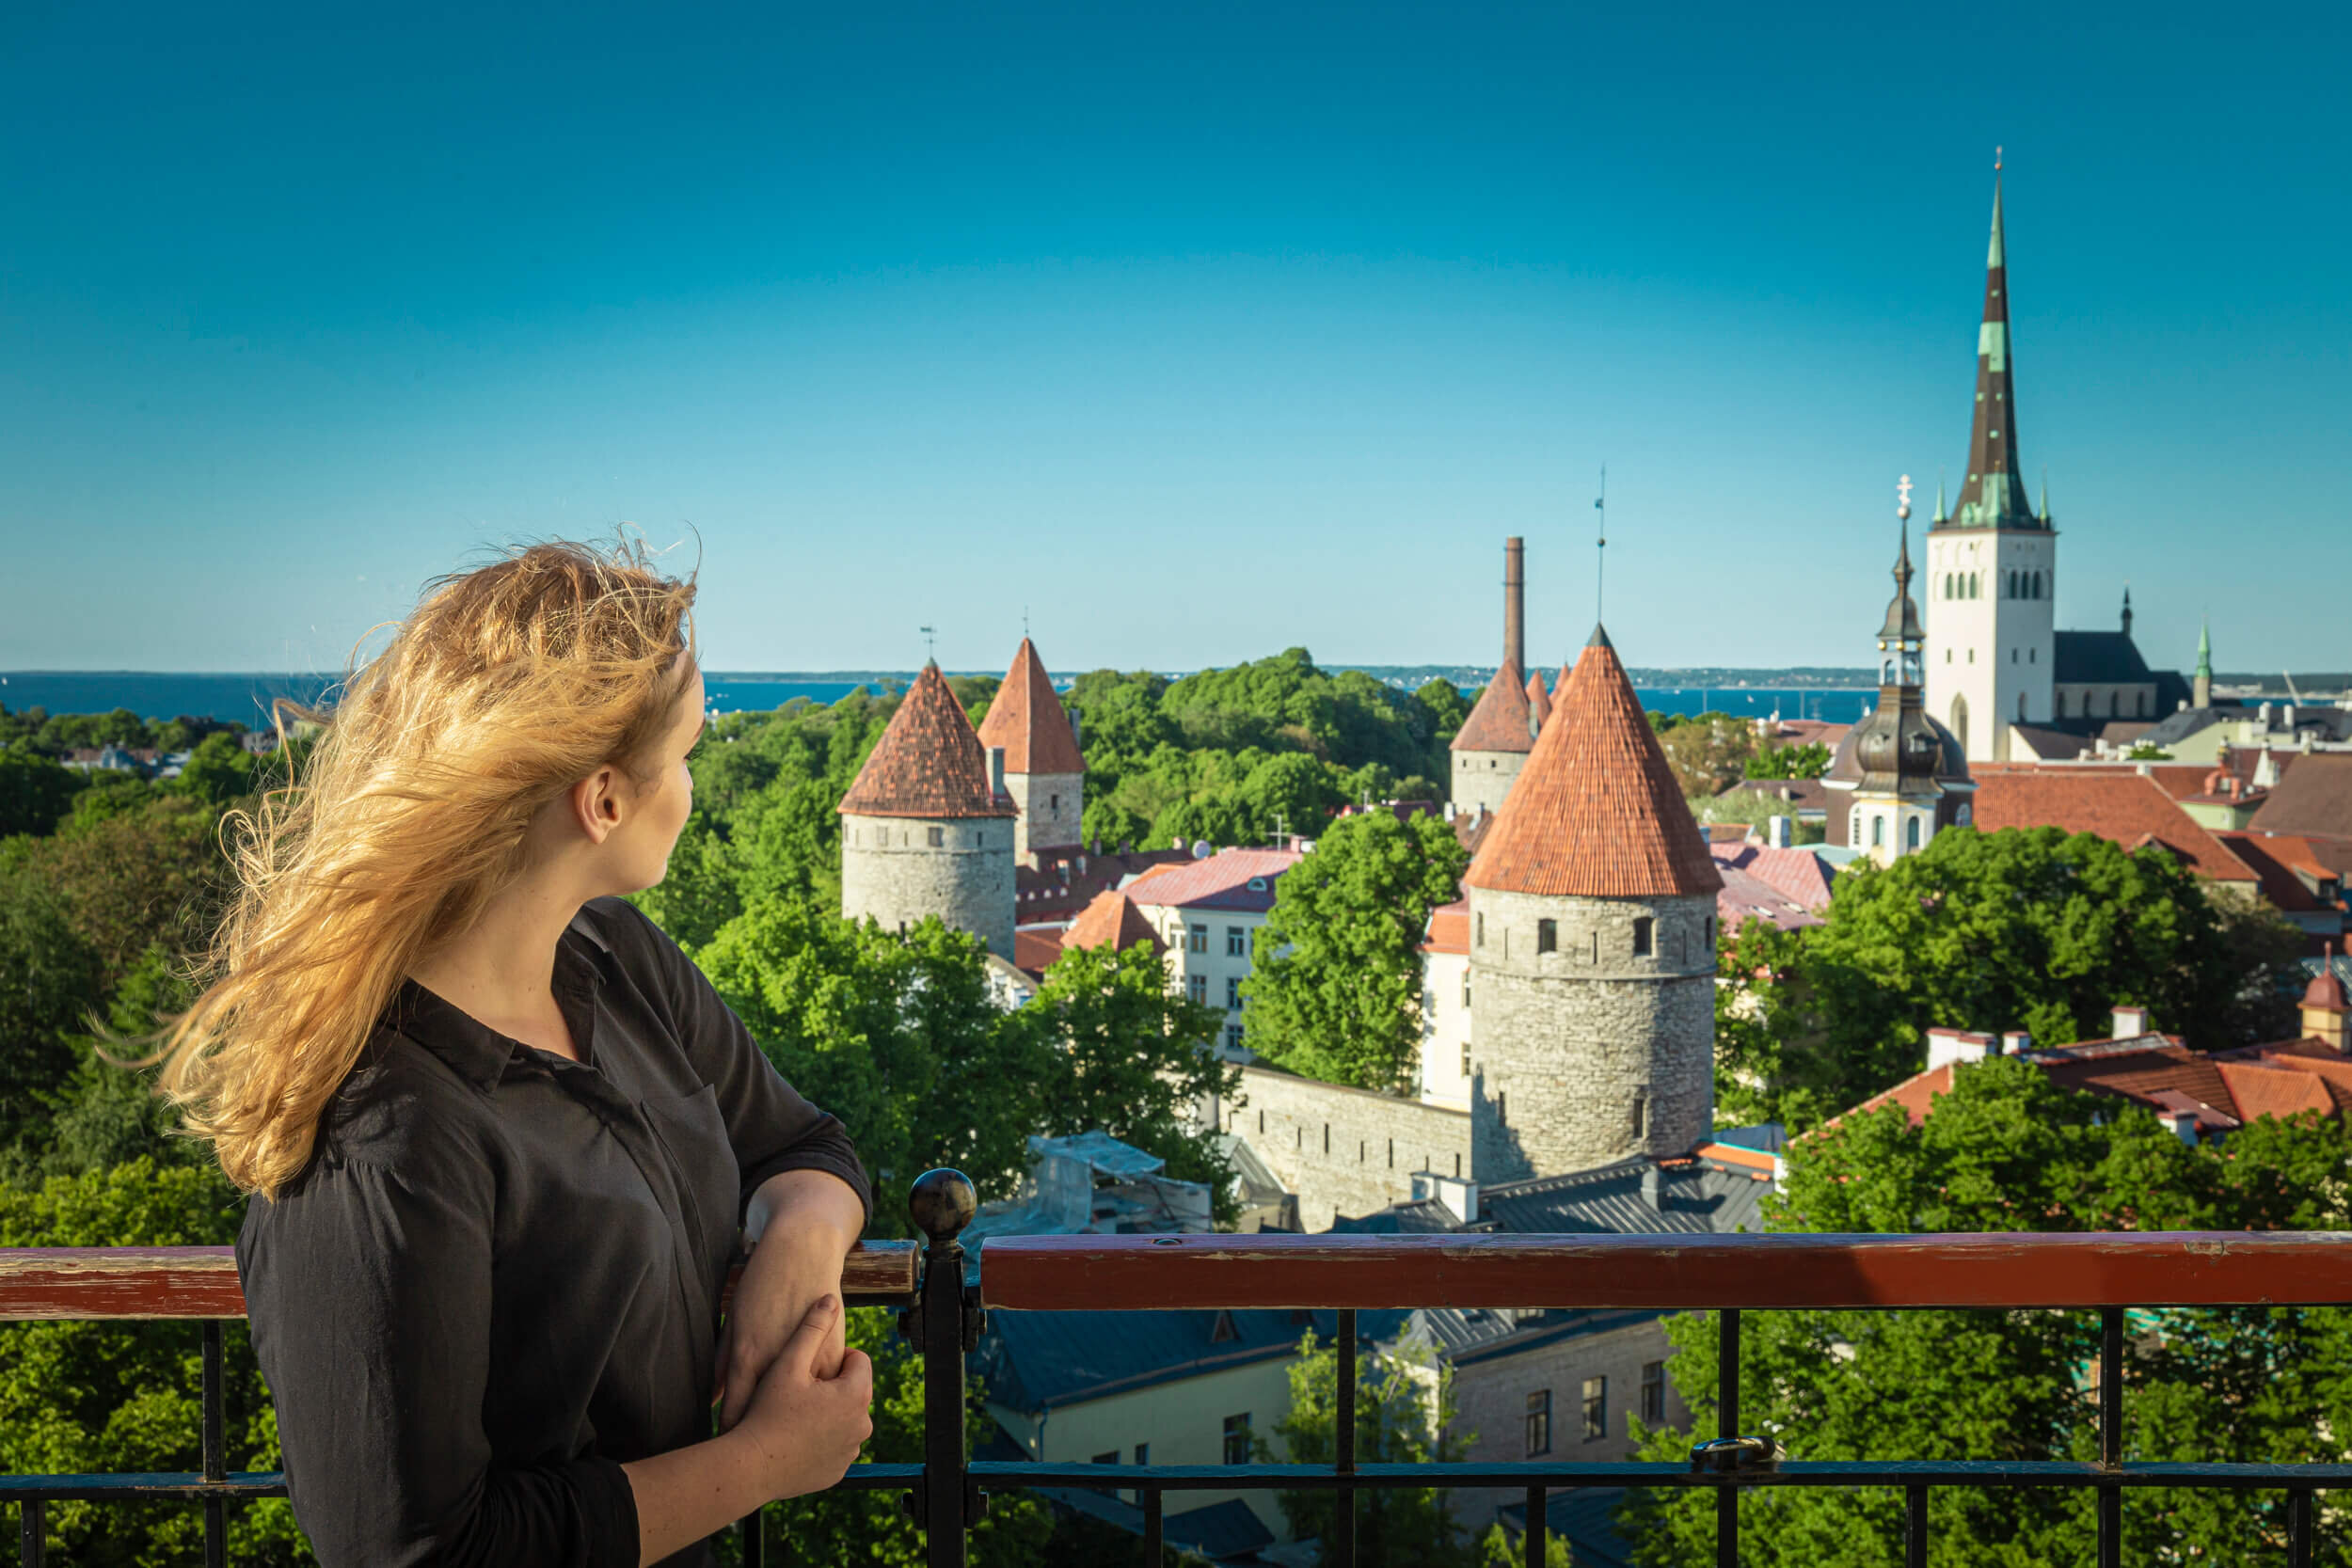 Capture unique memories in Tallinn